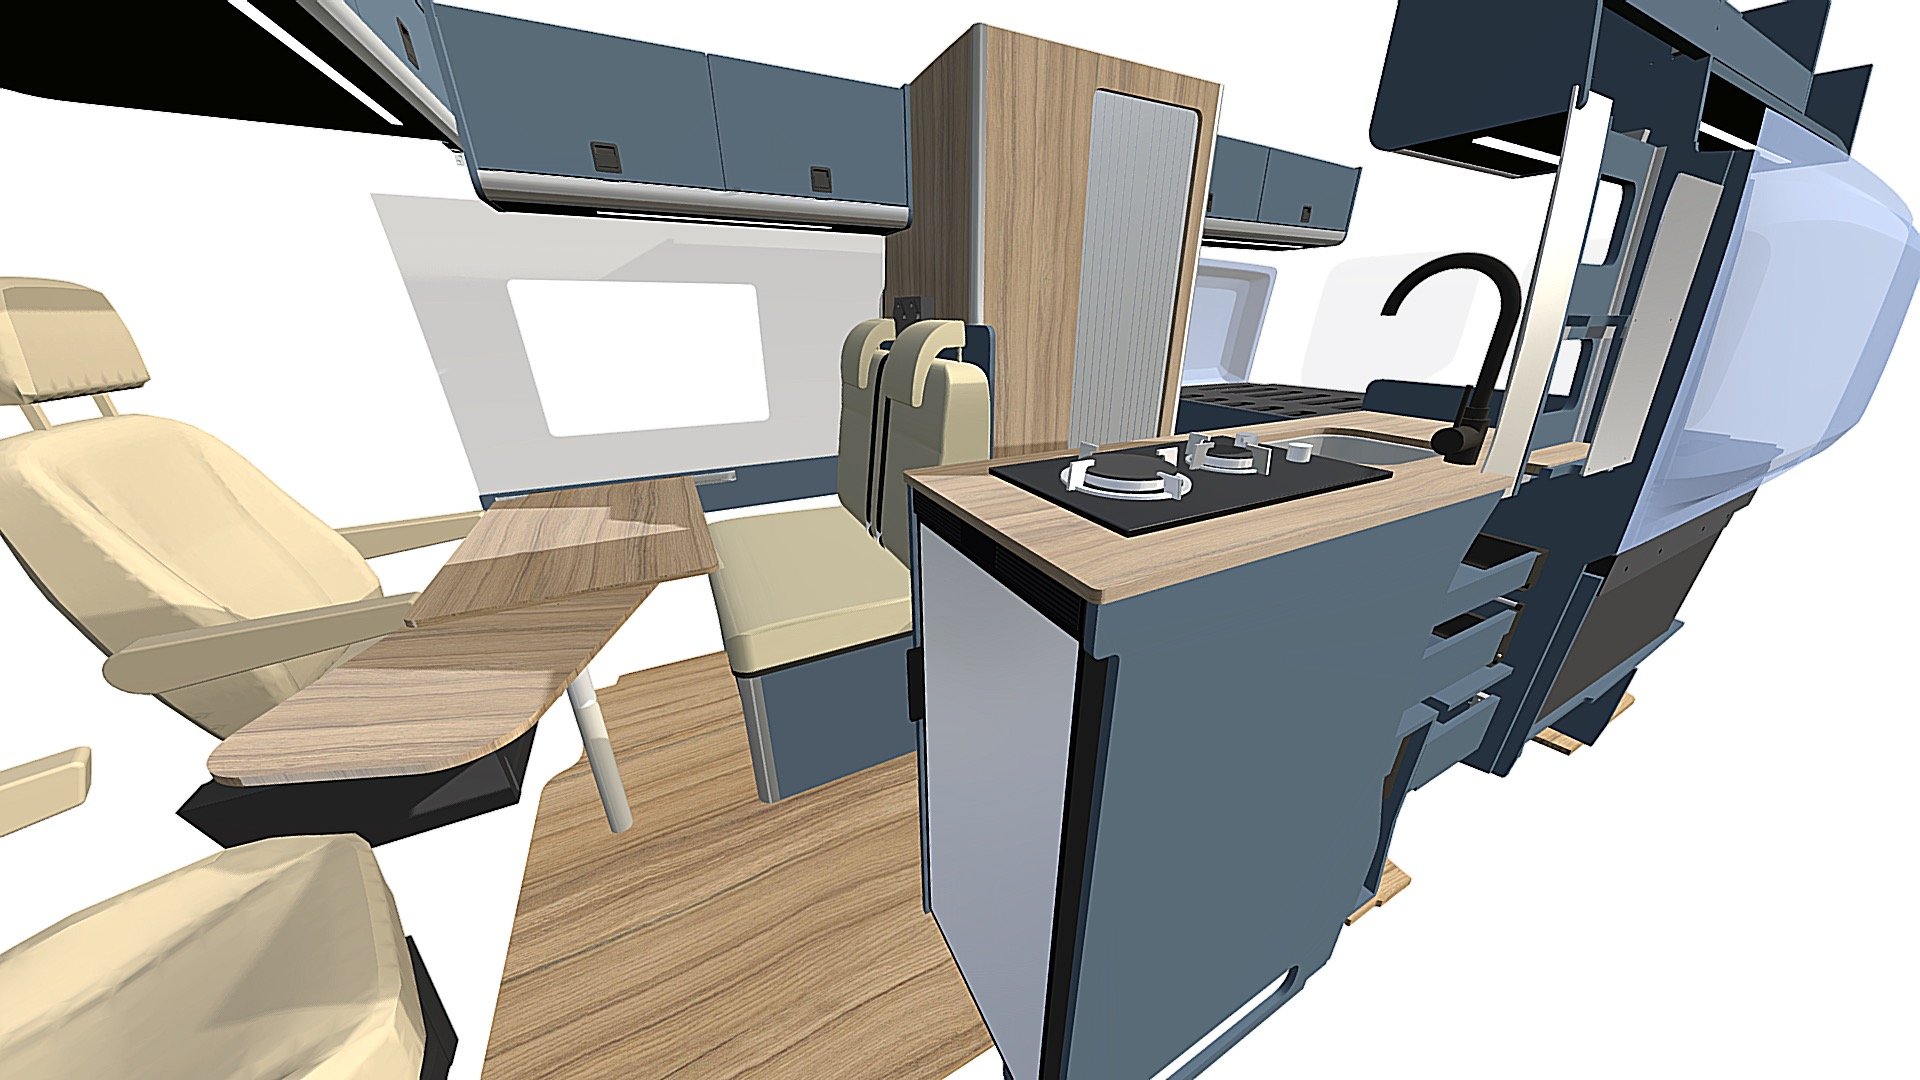 Design 2 - Crafter / Man TGE - 3D model by evomotiondesign 3d model